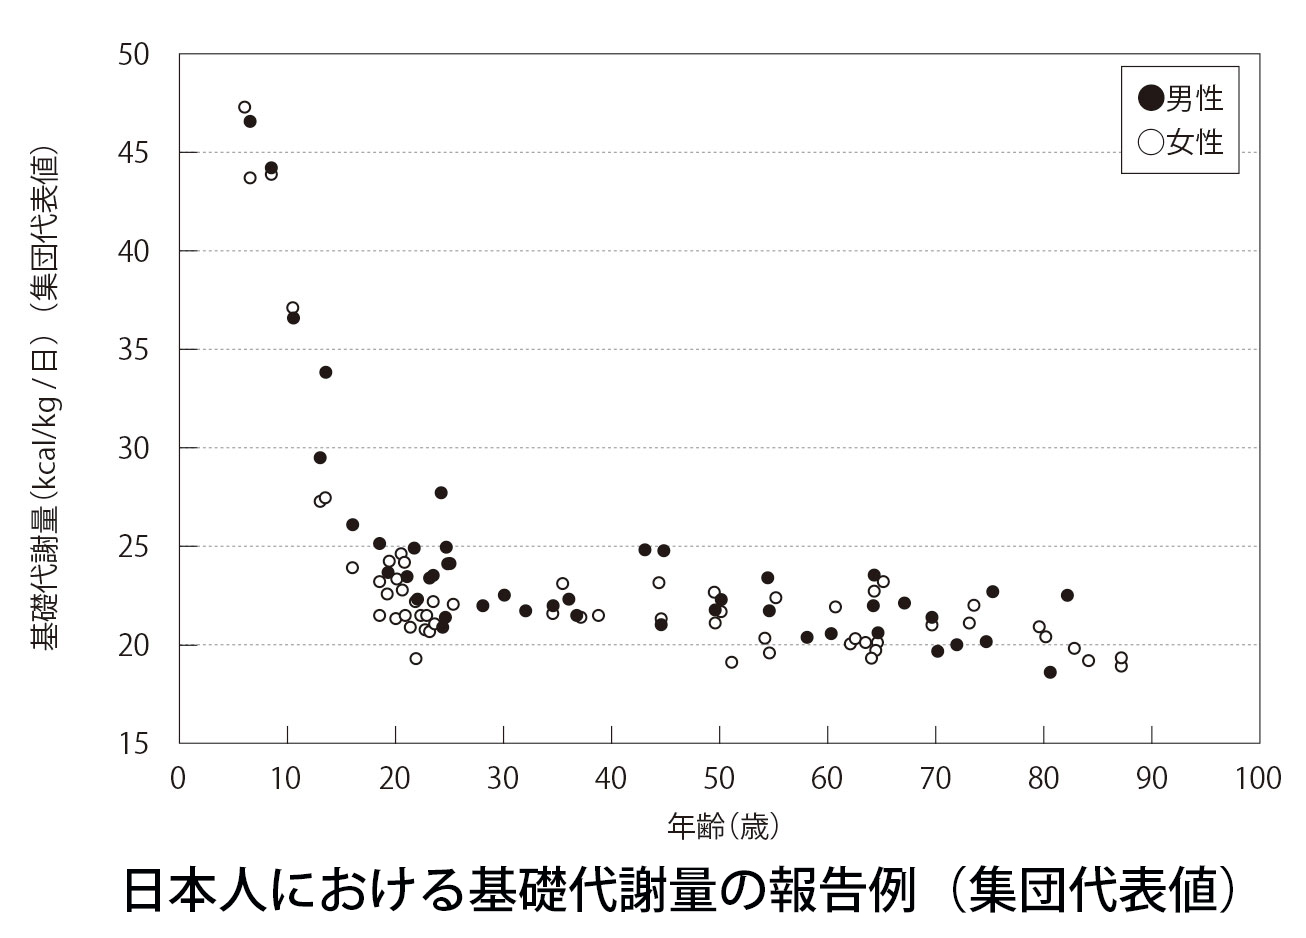 日本人における基礎代謝量の報告例（集団代表値）